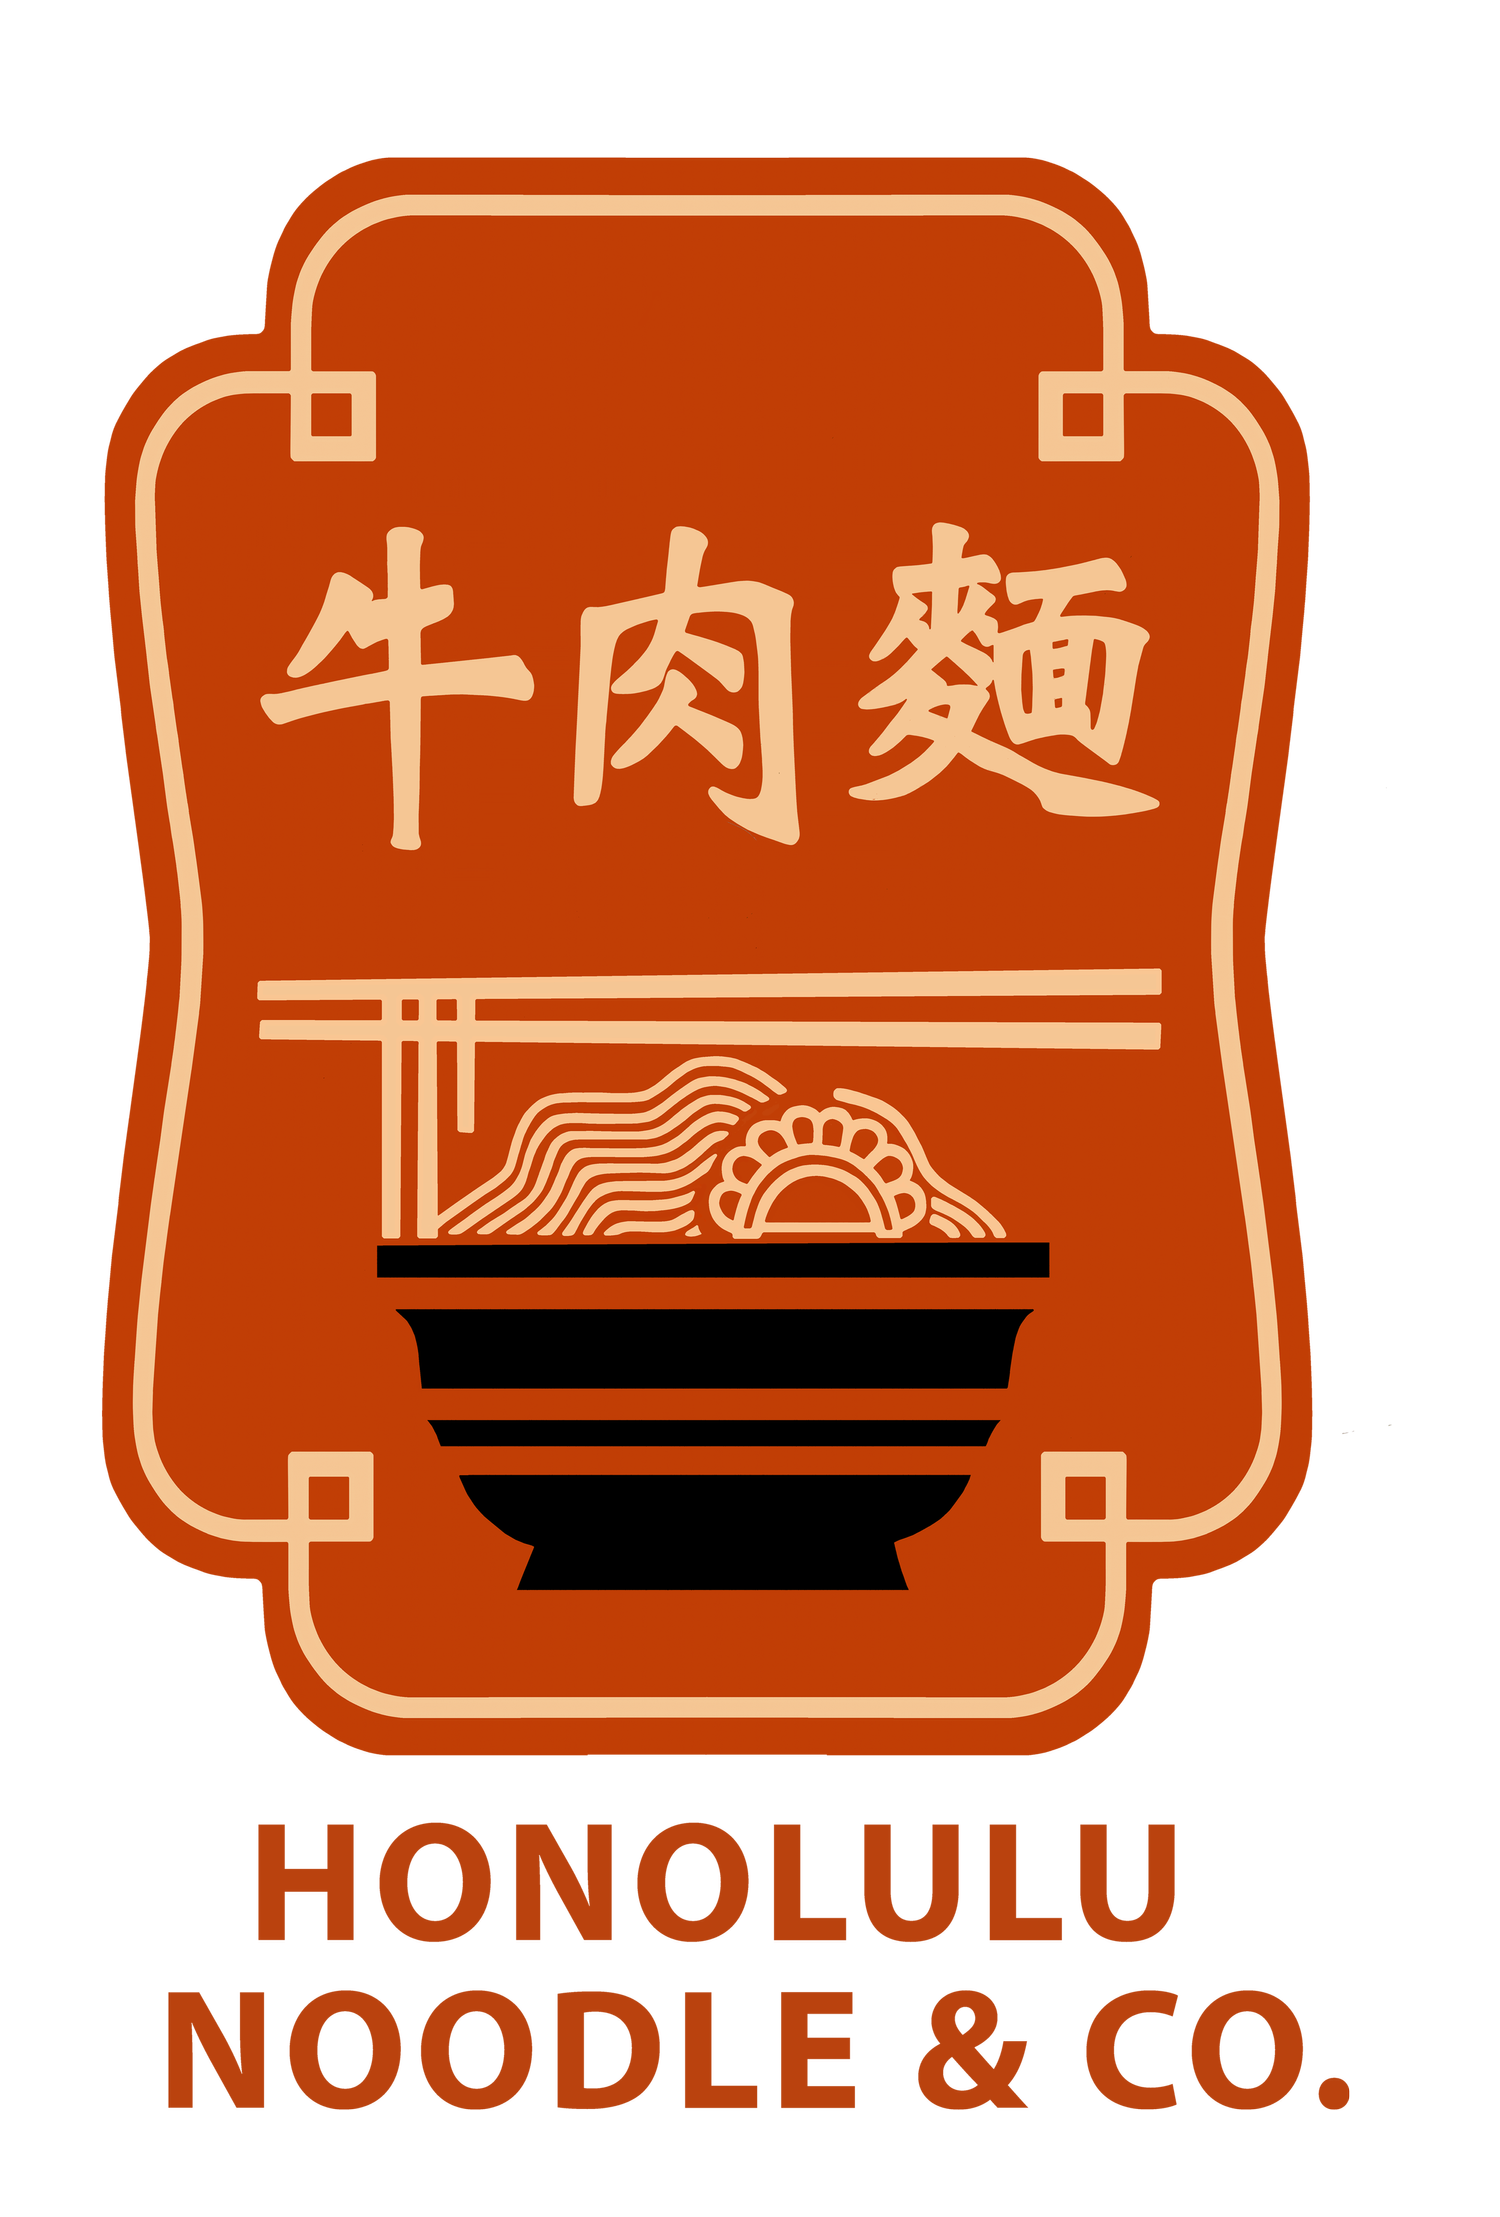 Honolulu Noodle Company